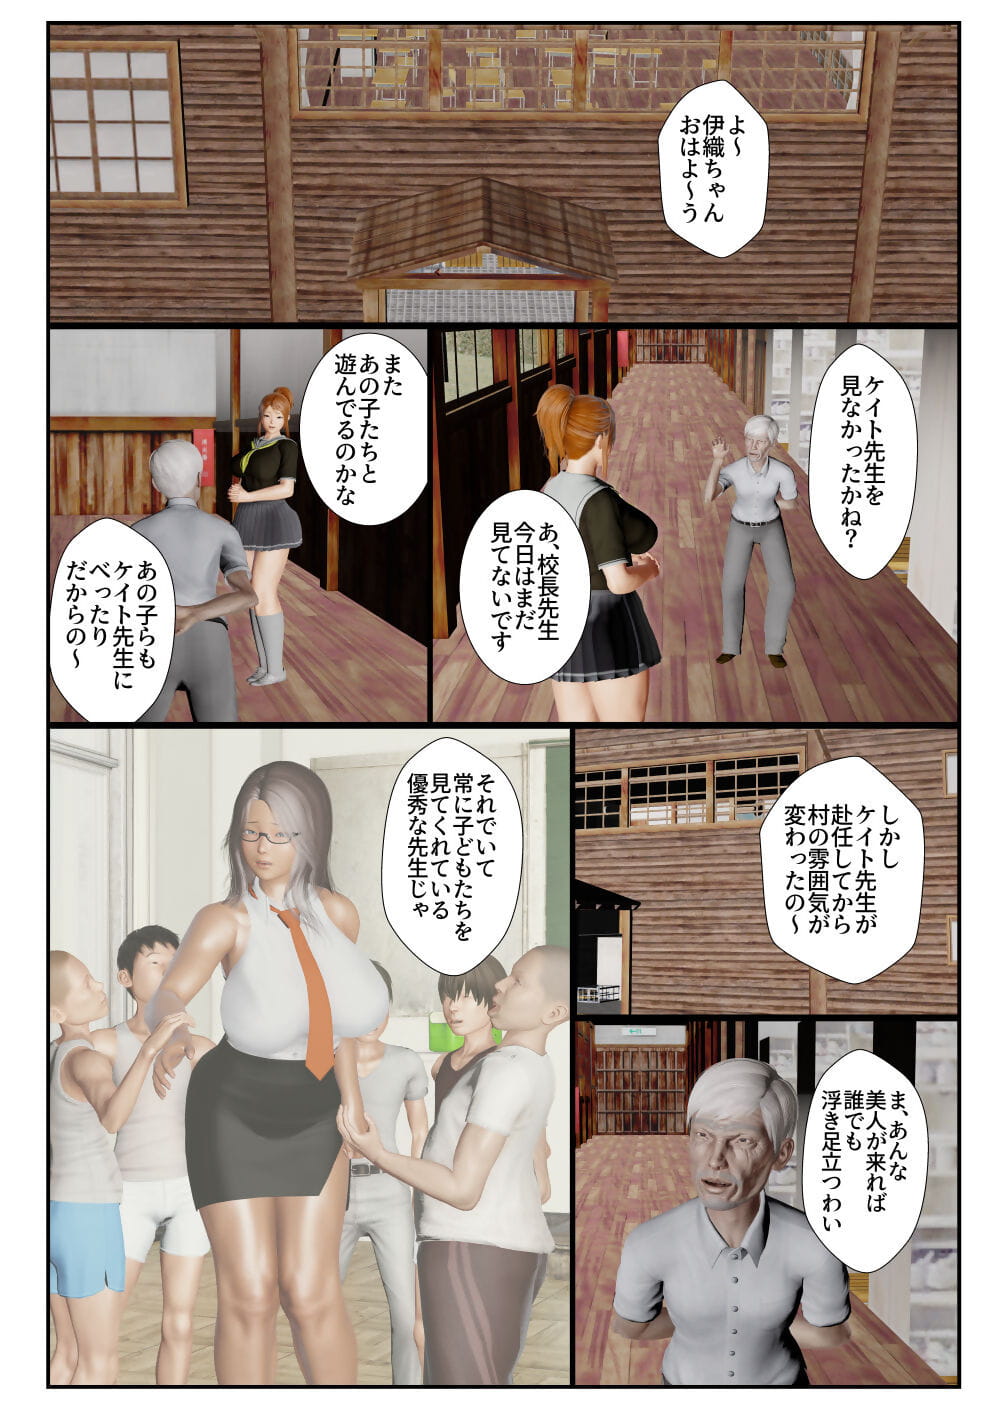 goriramu Touma kenshi Shiriizu Demônio espadachim série parte 4 page 1